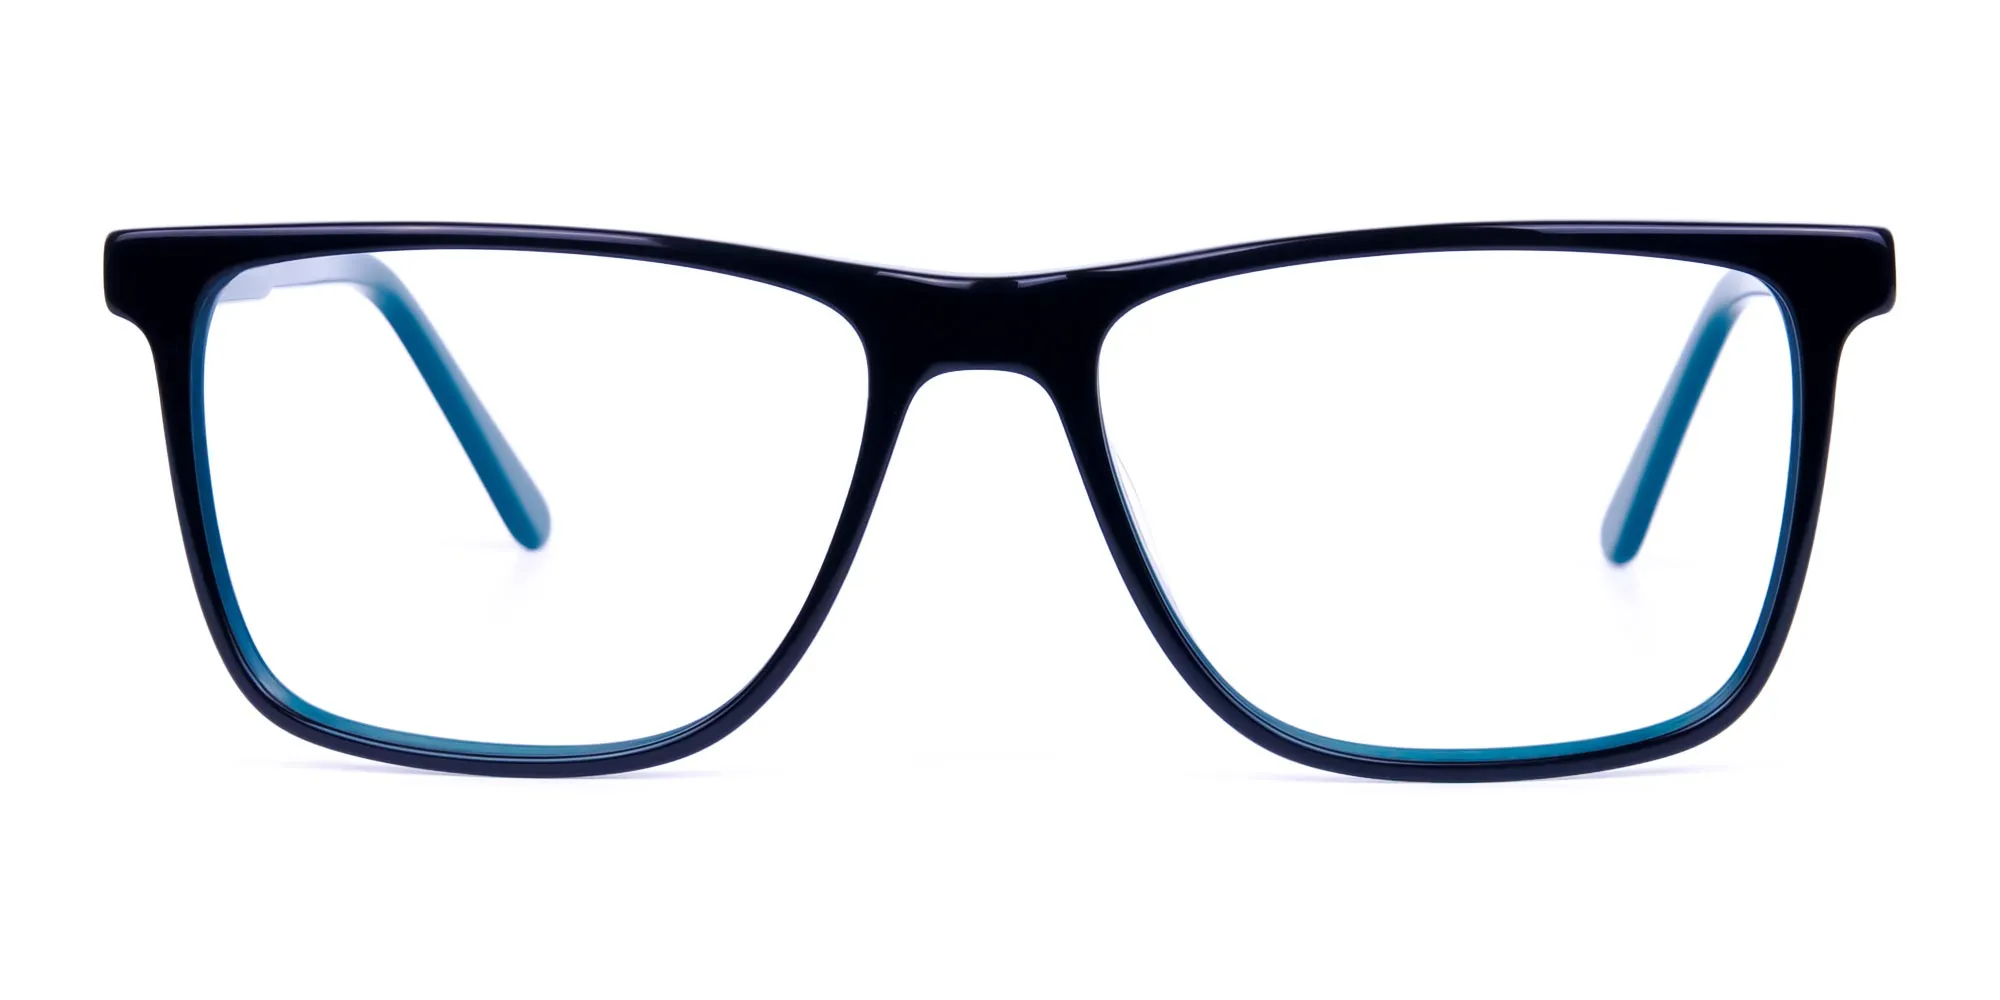 Black Designer Rectangular Glasses Frames-2